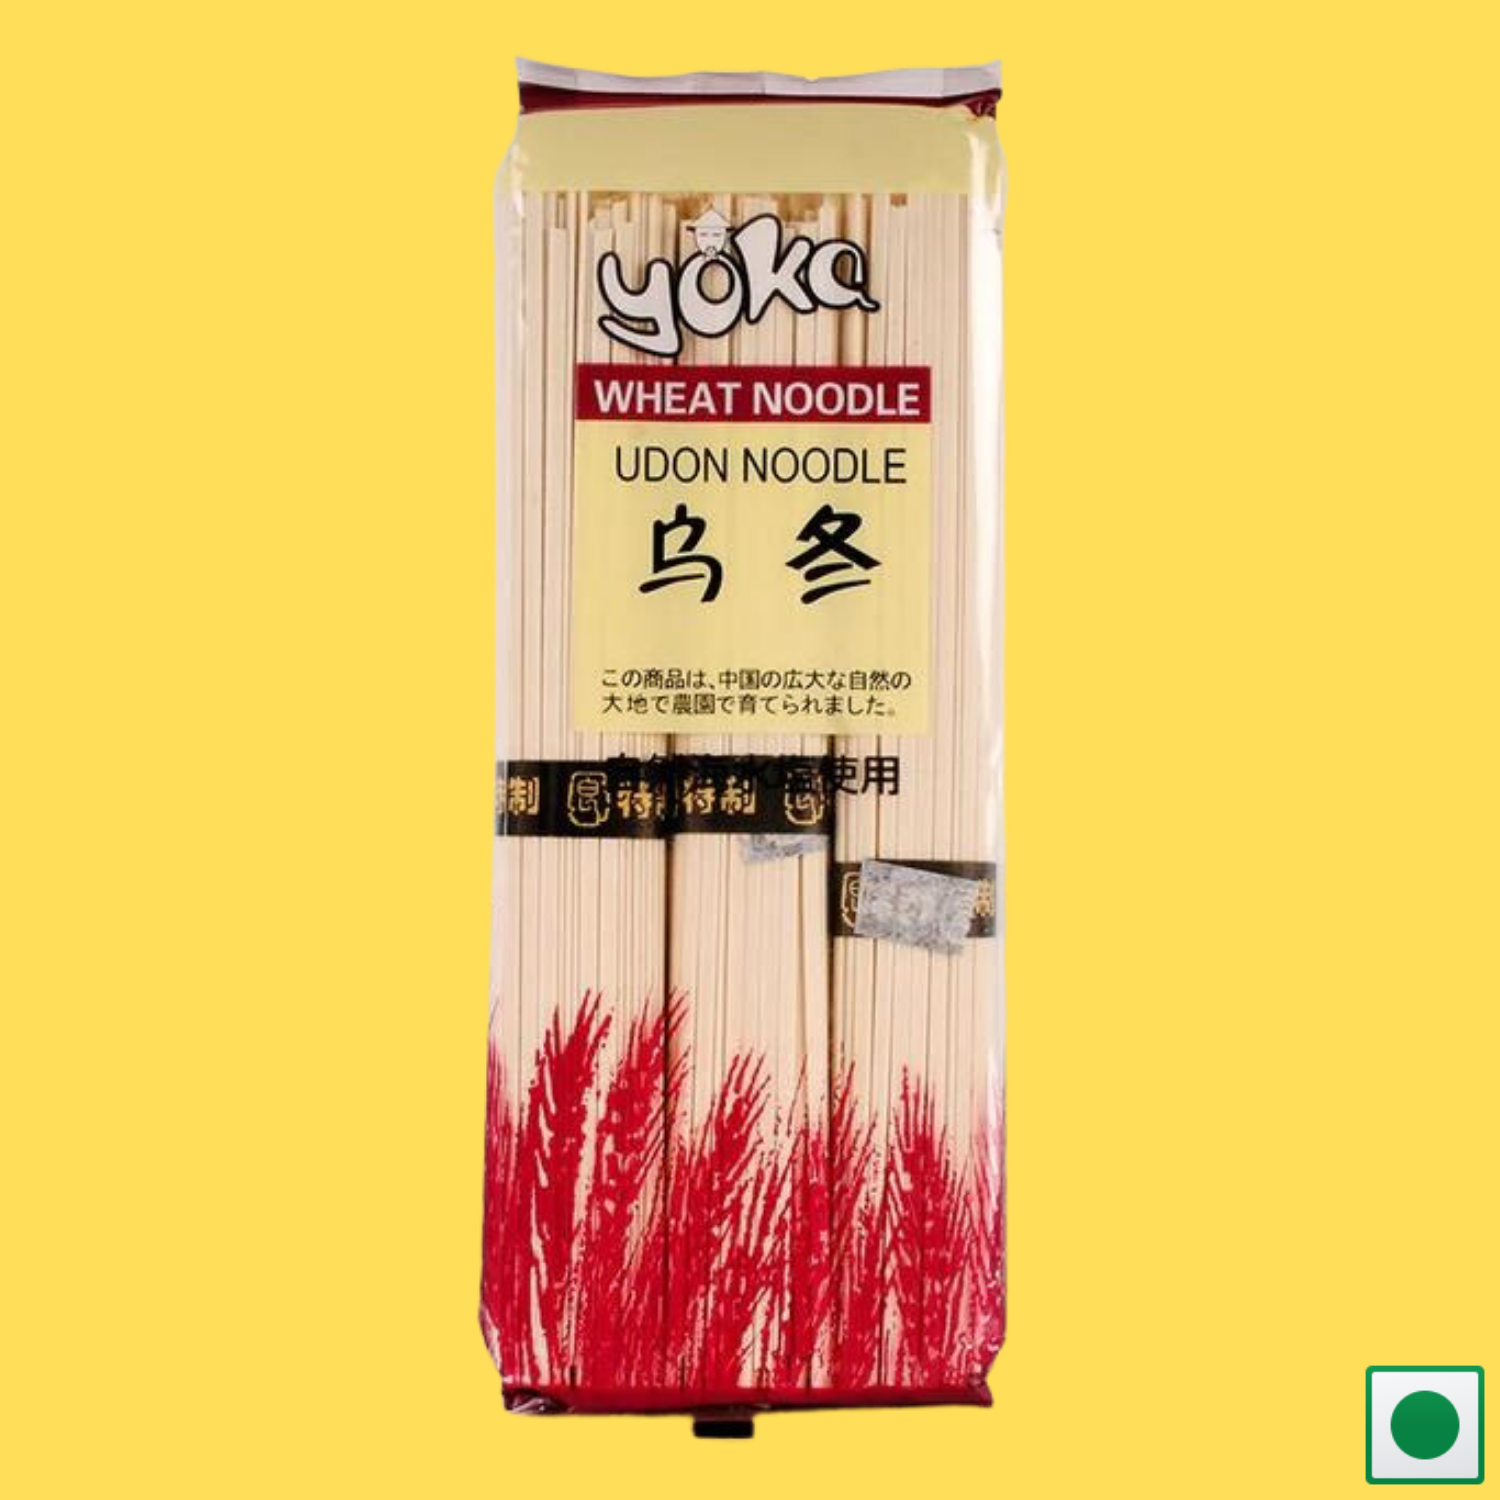 Yoka Udon Wheat Noodles, 300g (Imported)